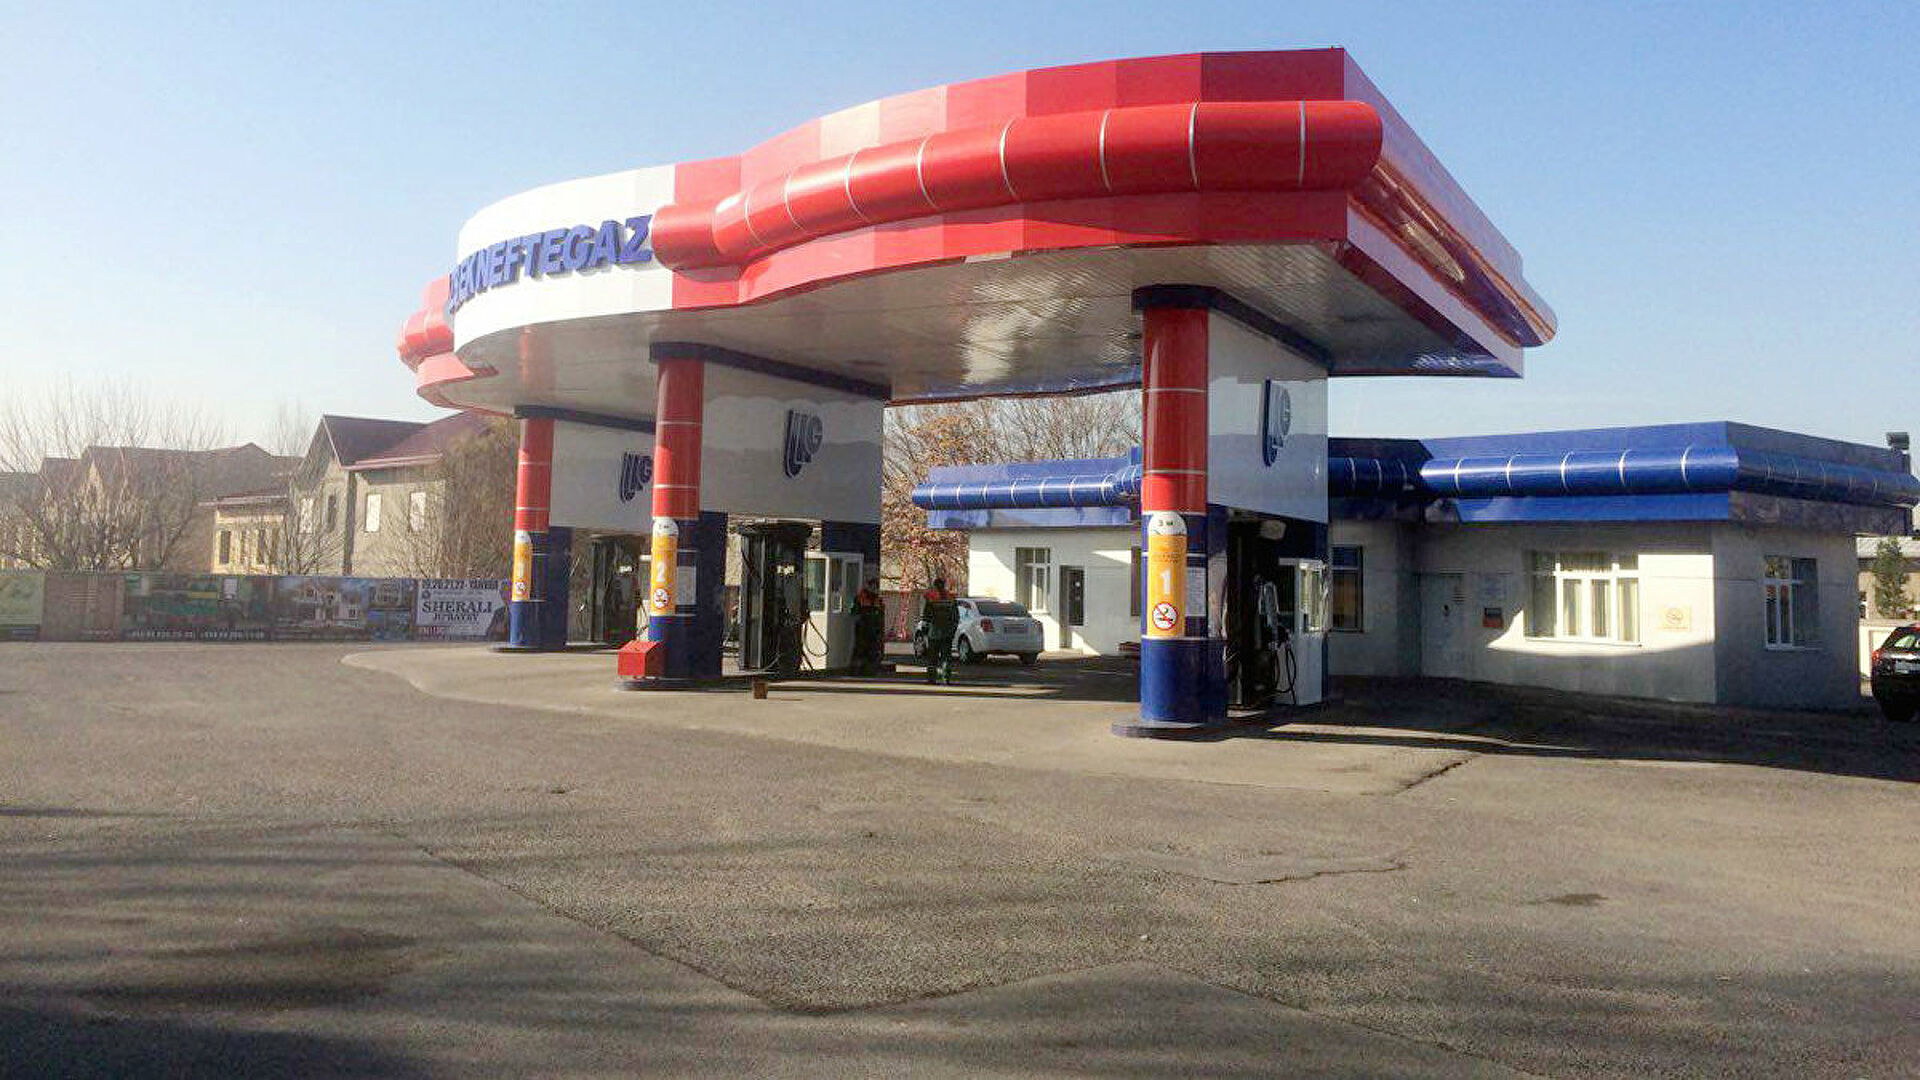 Хорошие новости: в Узбекистане снизились биржевые цены на бензин